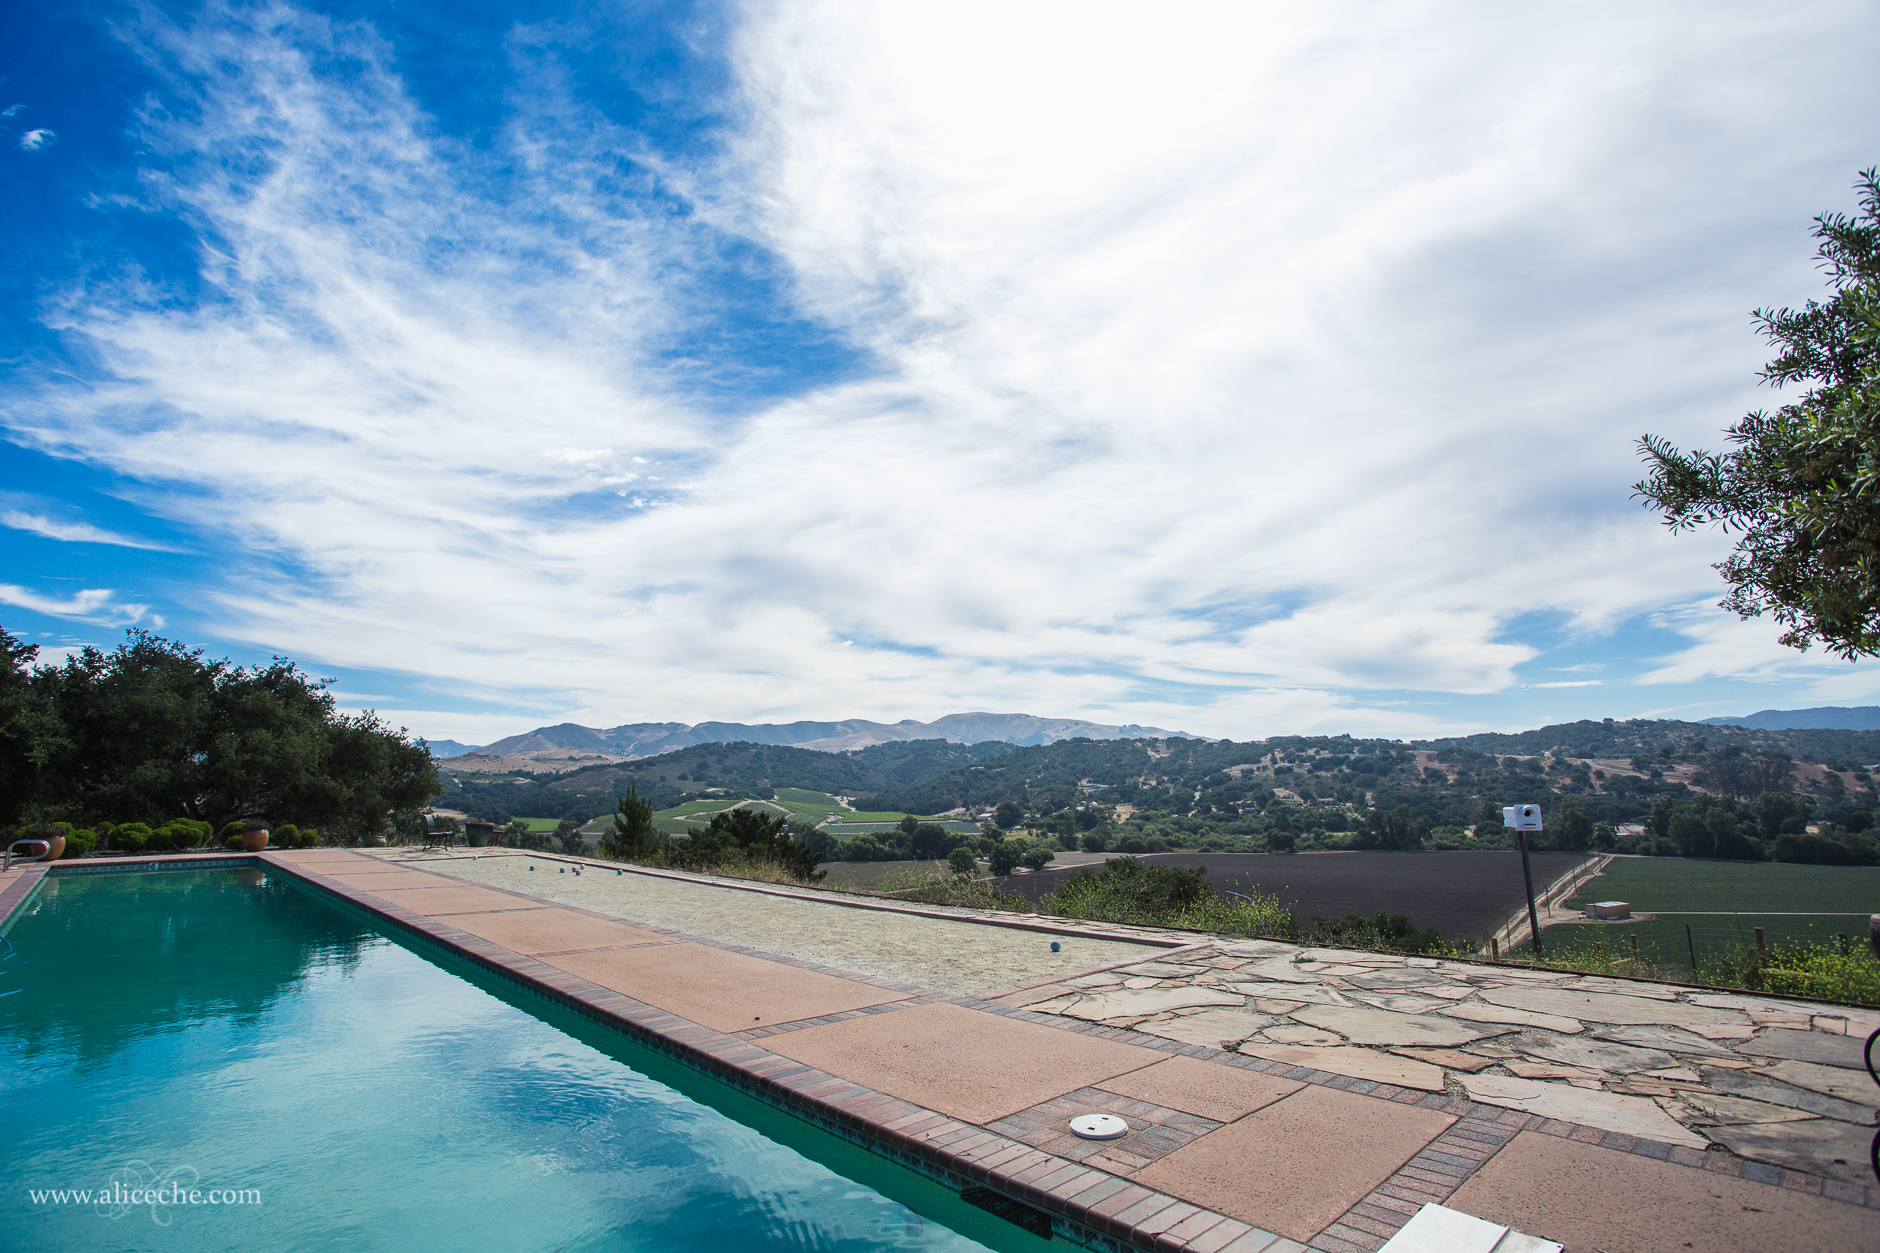 The Casitas Estate San Luis Obispo Wedding Venue Pool and View